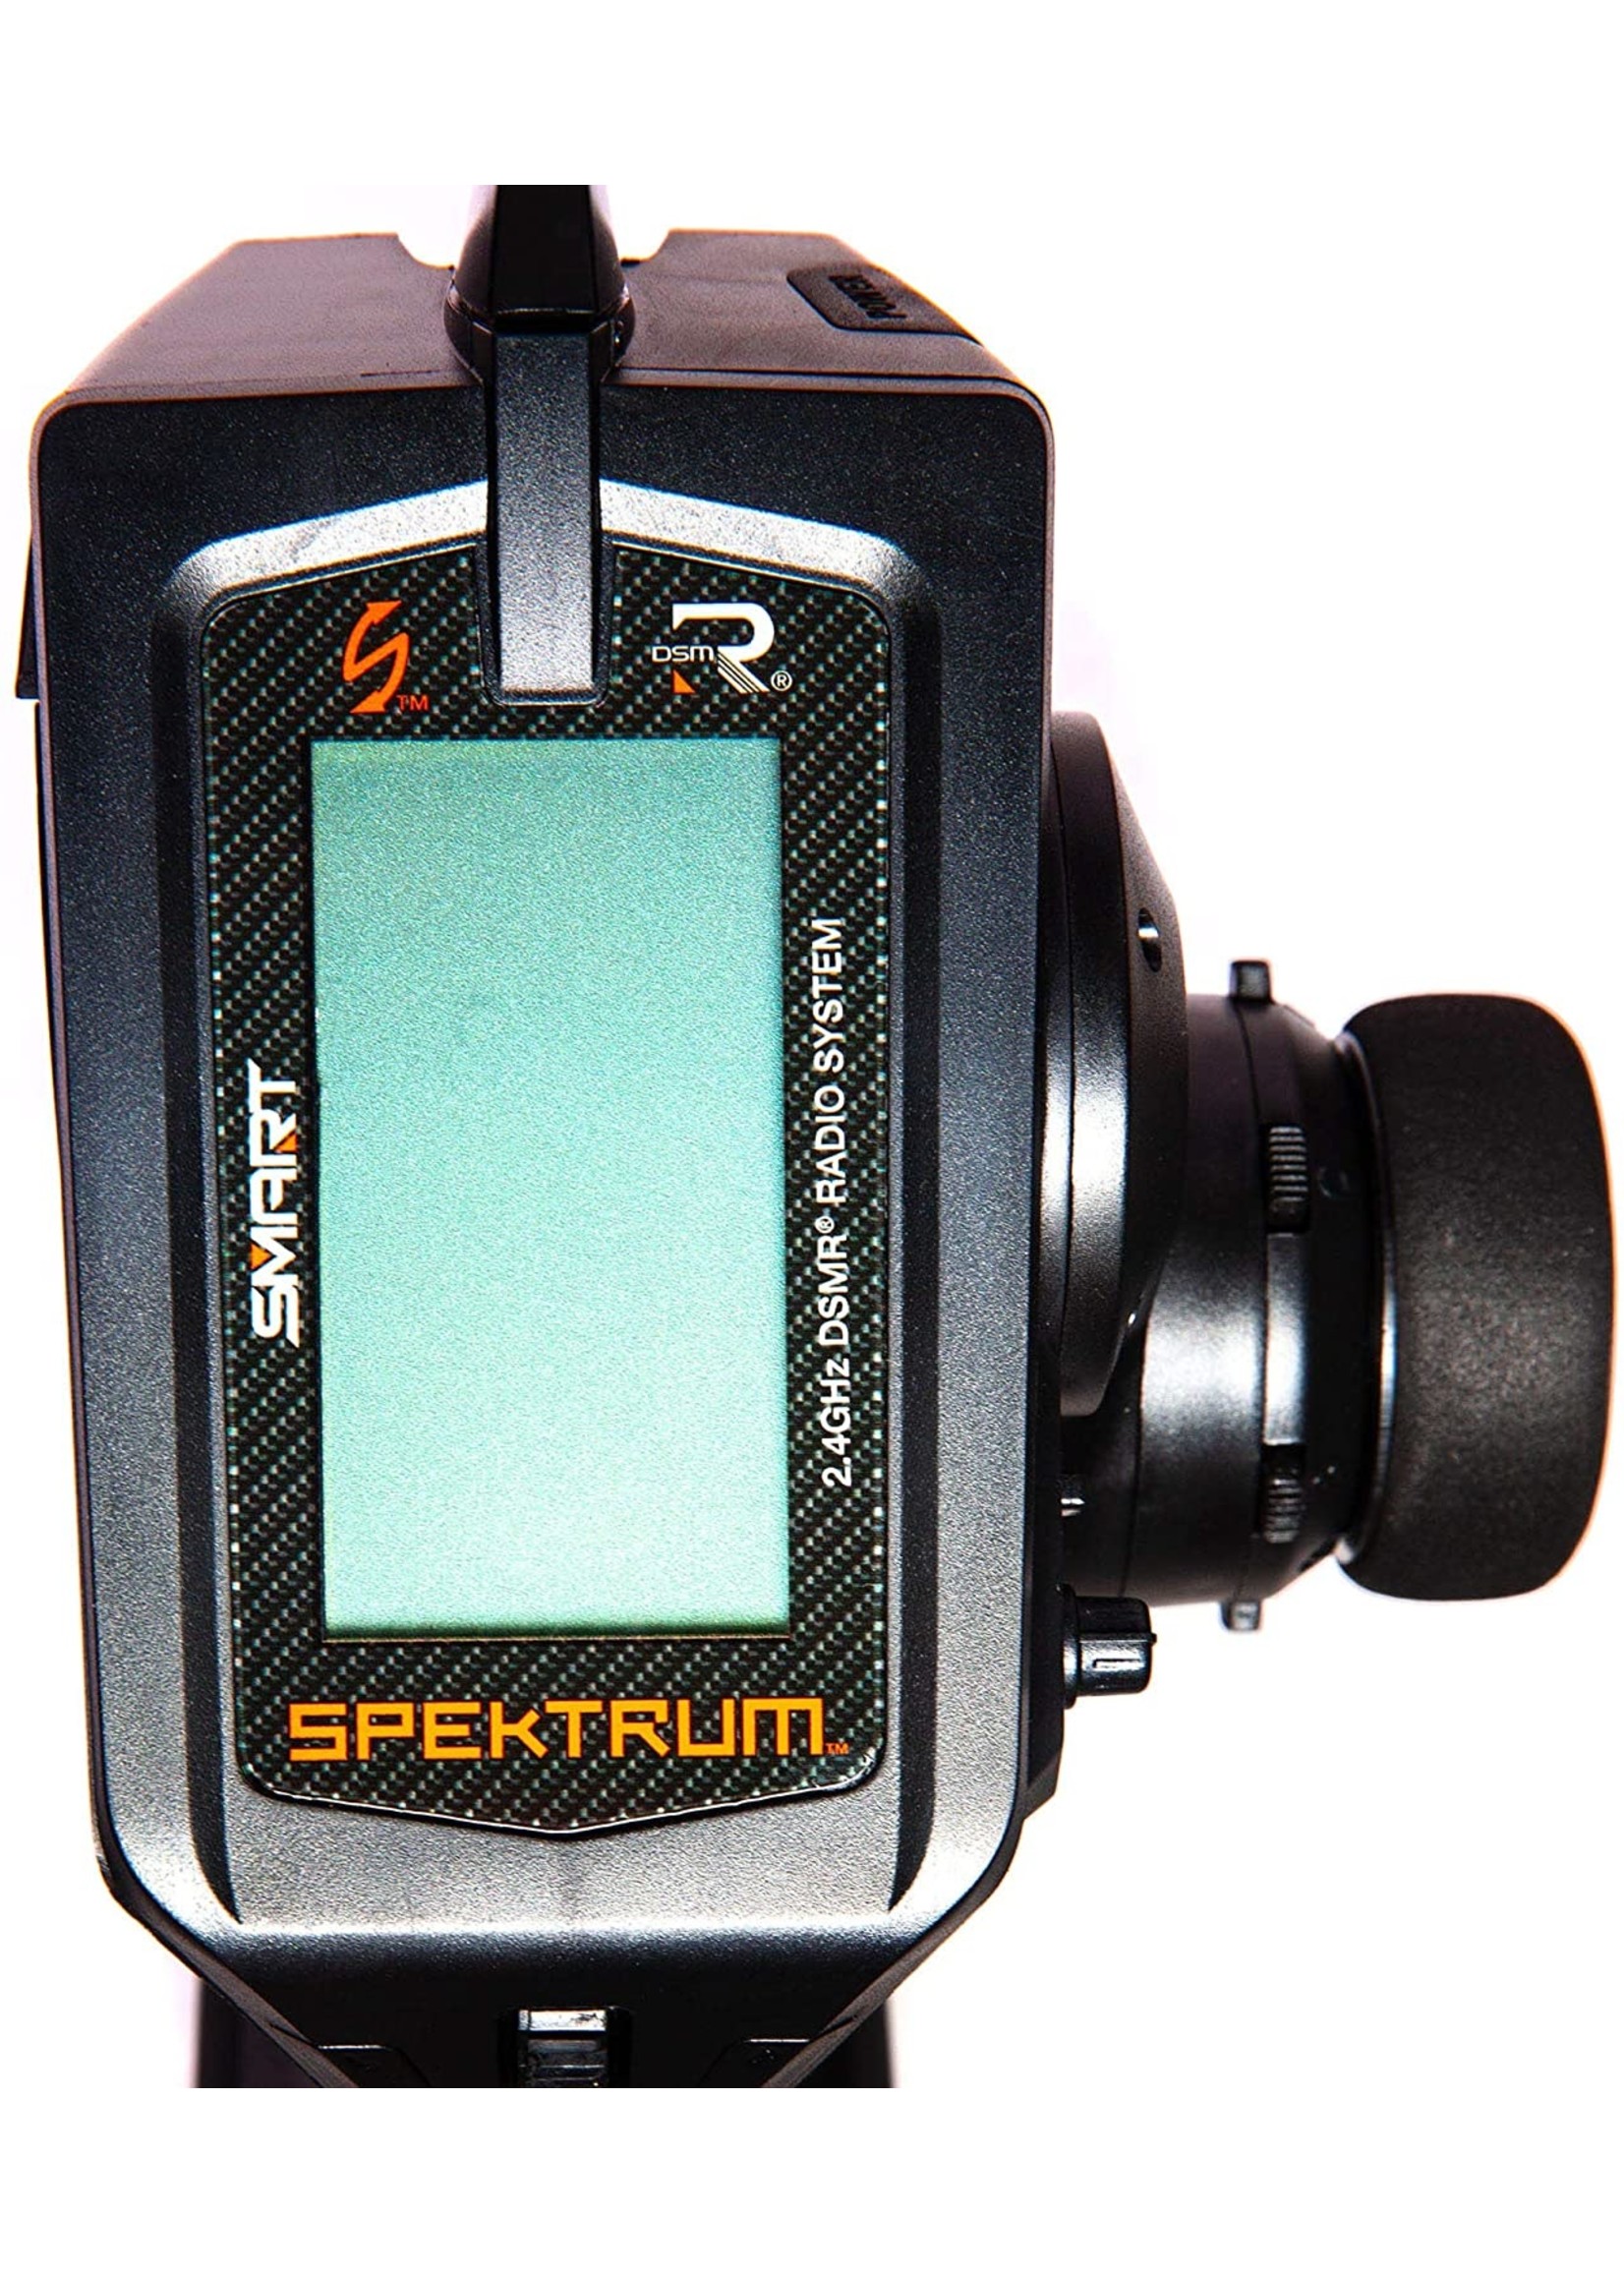 Spektrum SPMR5025 - DX5 Pro 2021 DSMR (Transmitter Only)